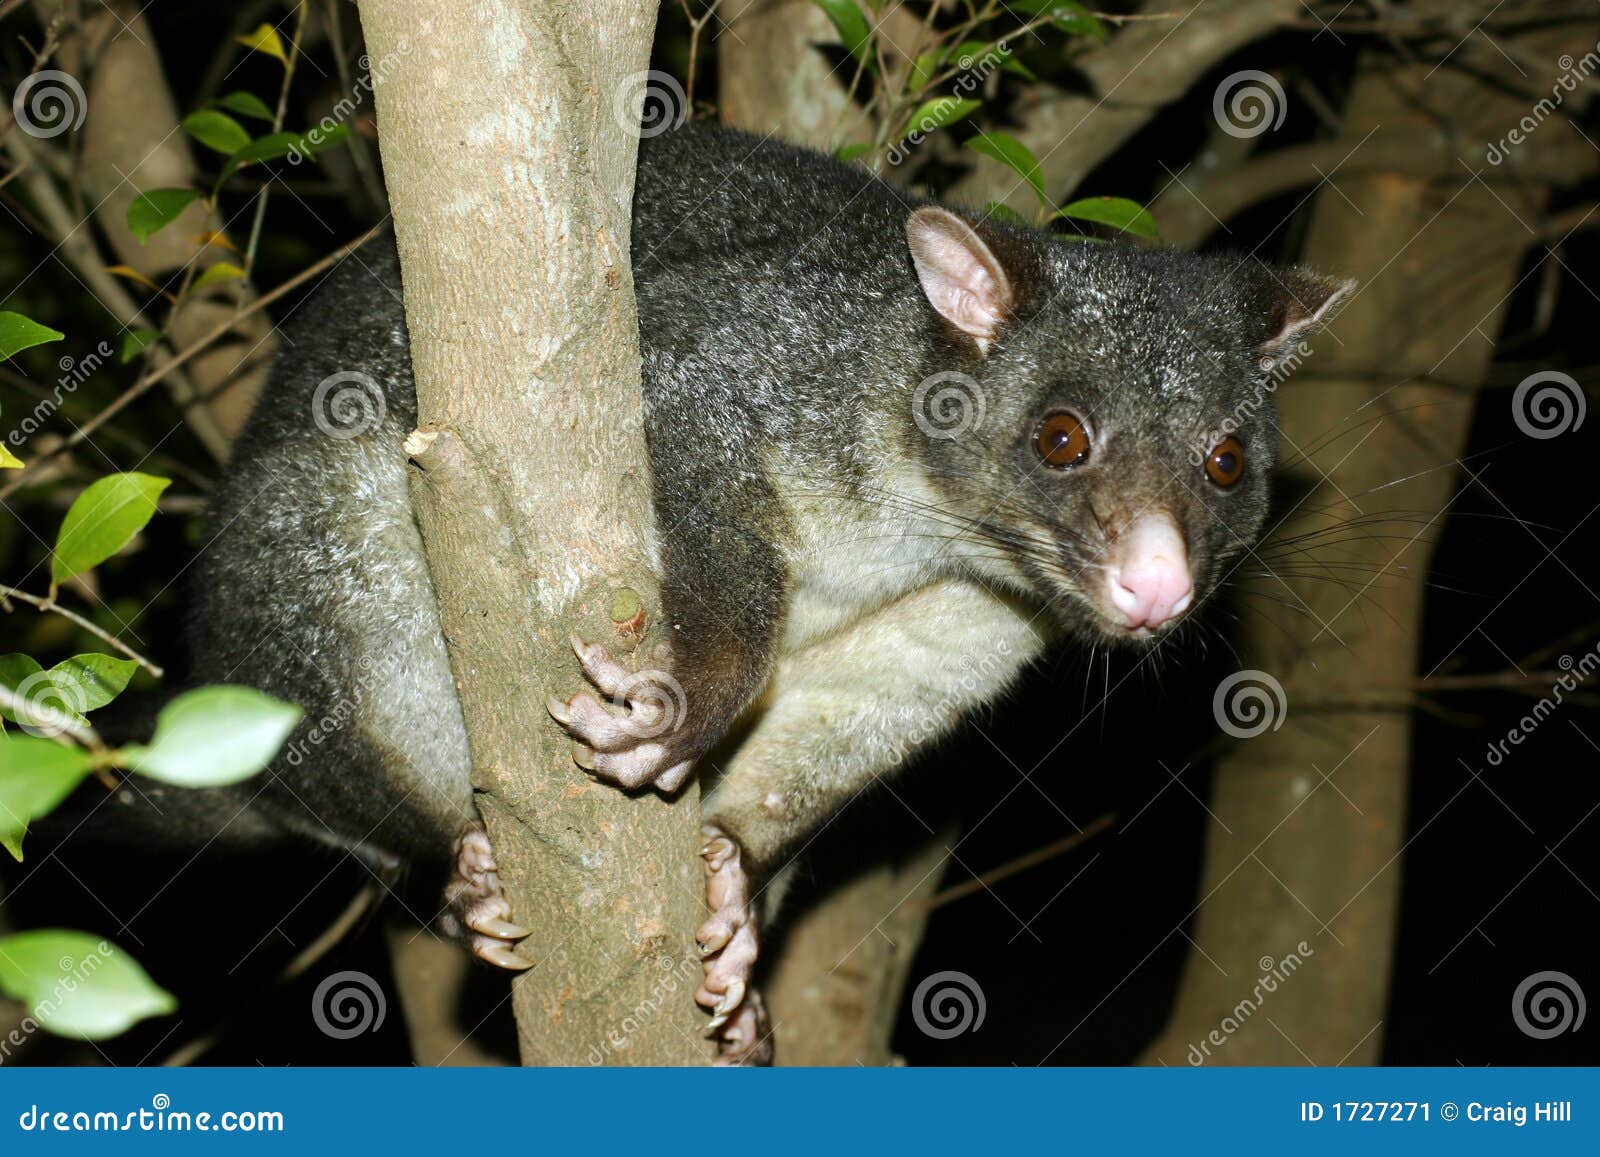 Tree possum